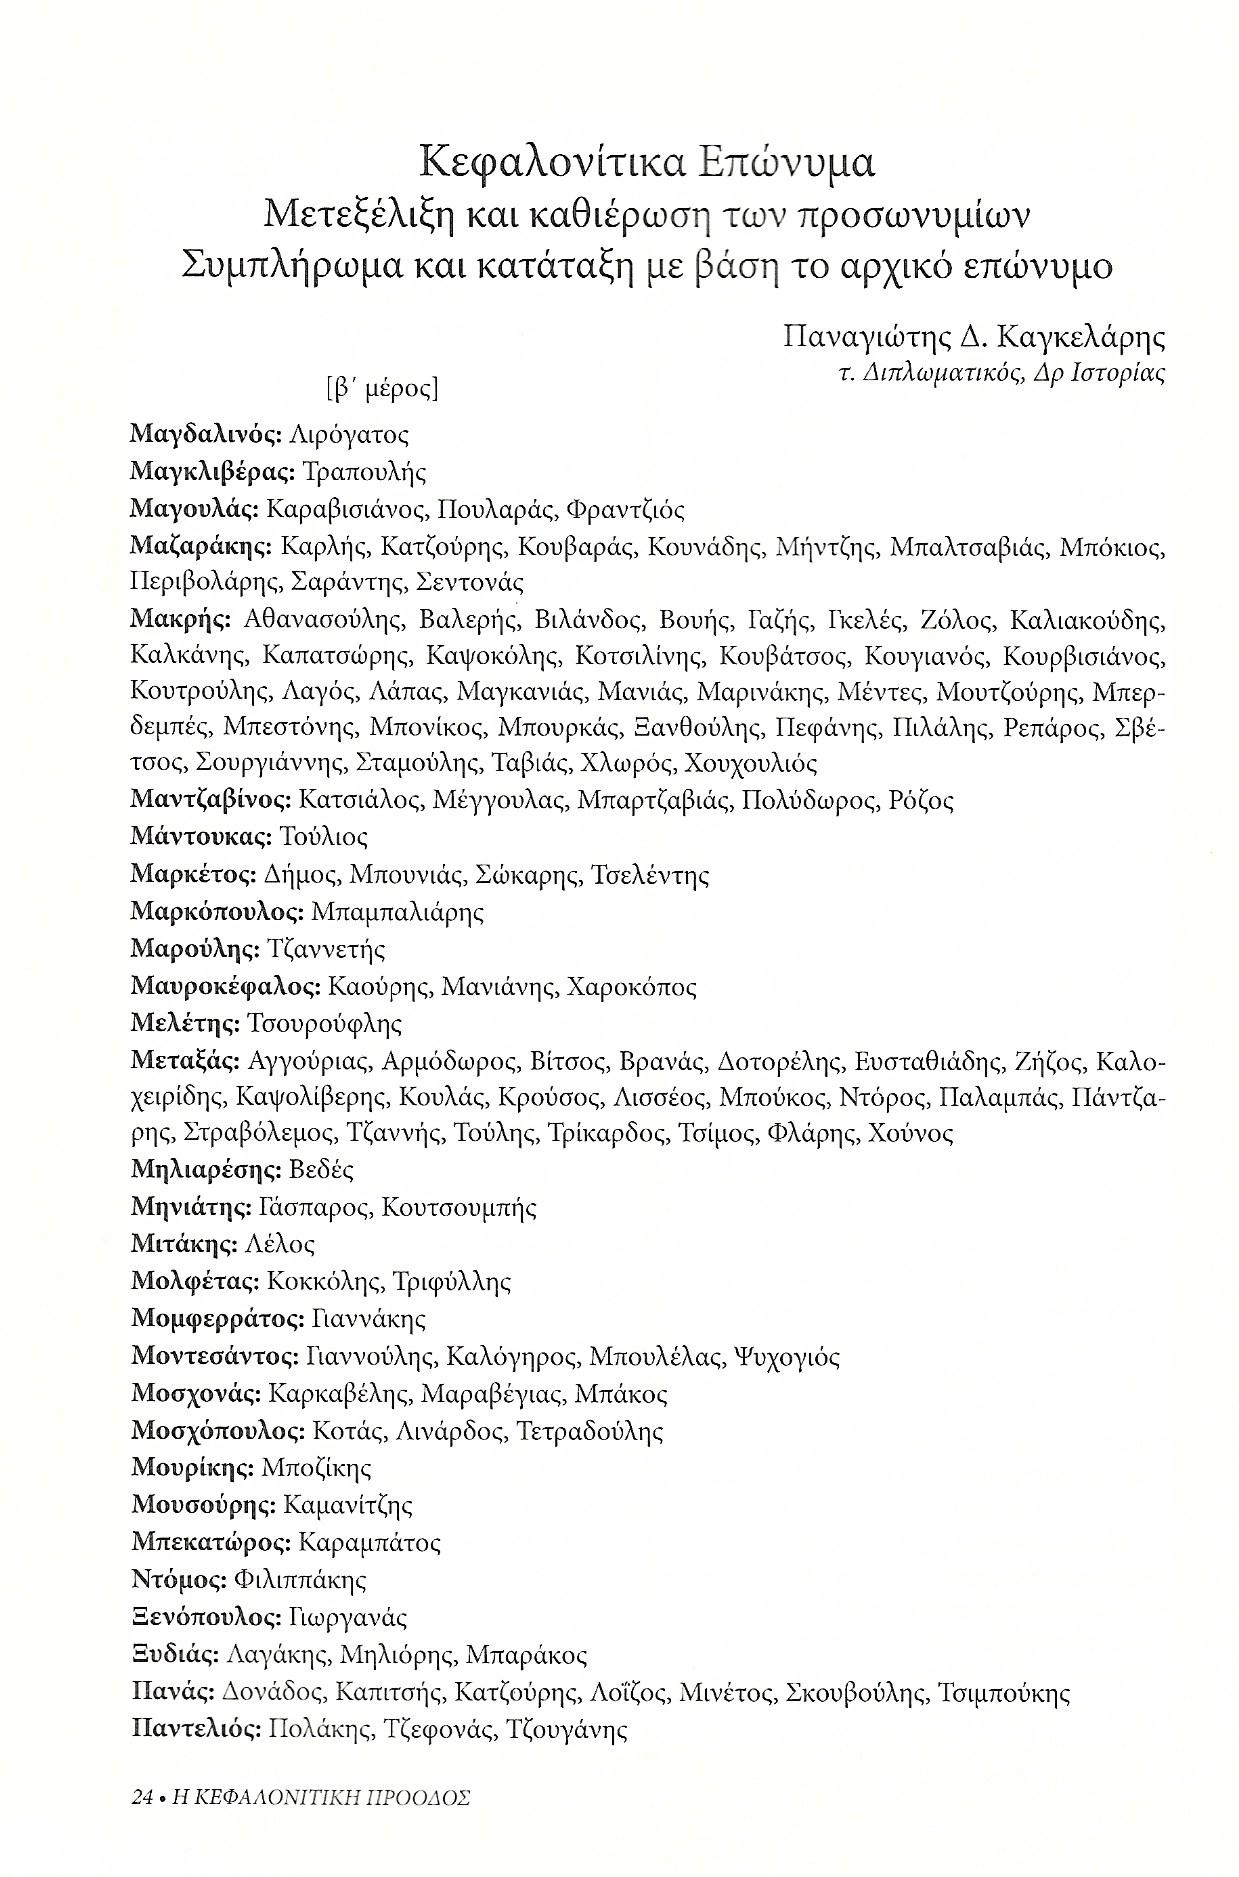 Κεφαλονίτικα επώνυμα , Κεφαλονίτικη Πρόοδος, Β-21, σελ. 24